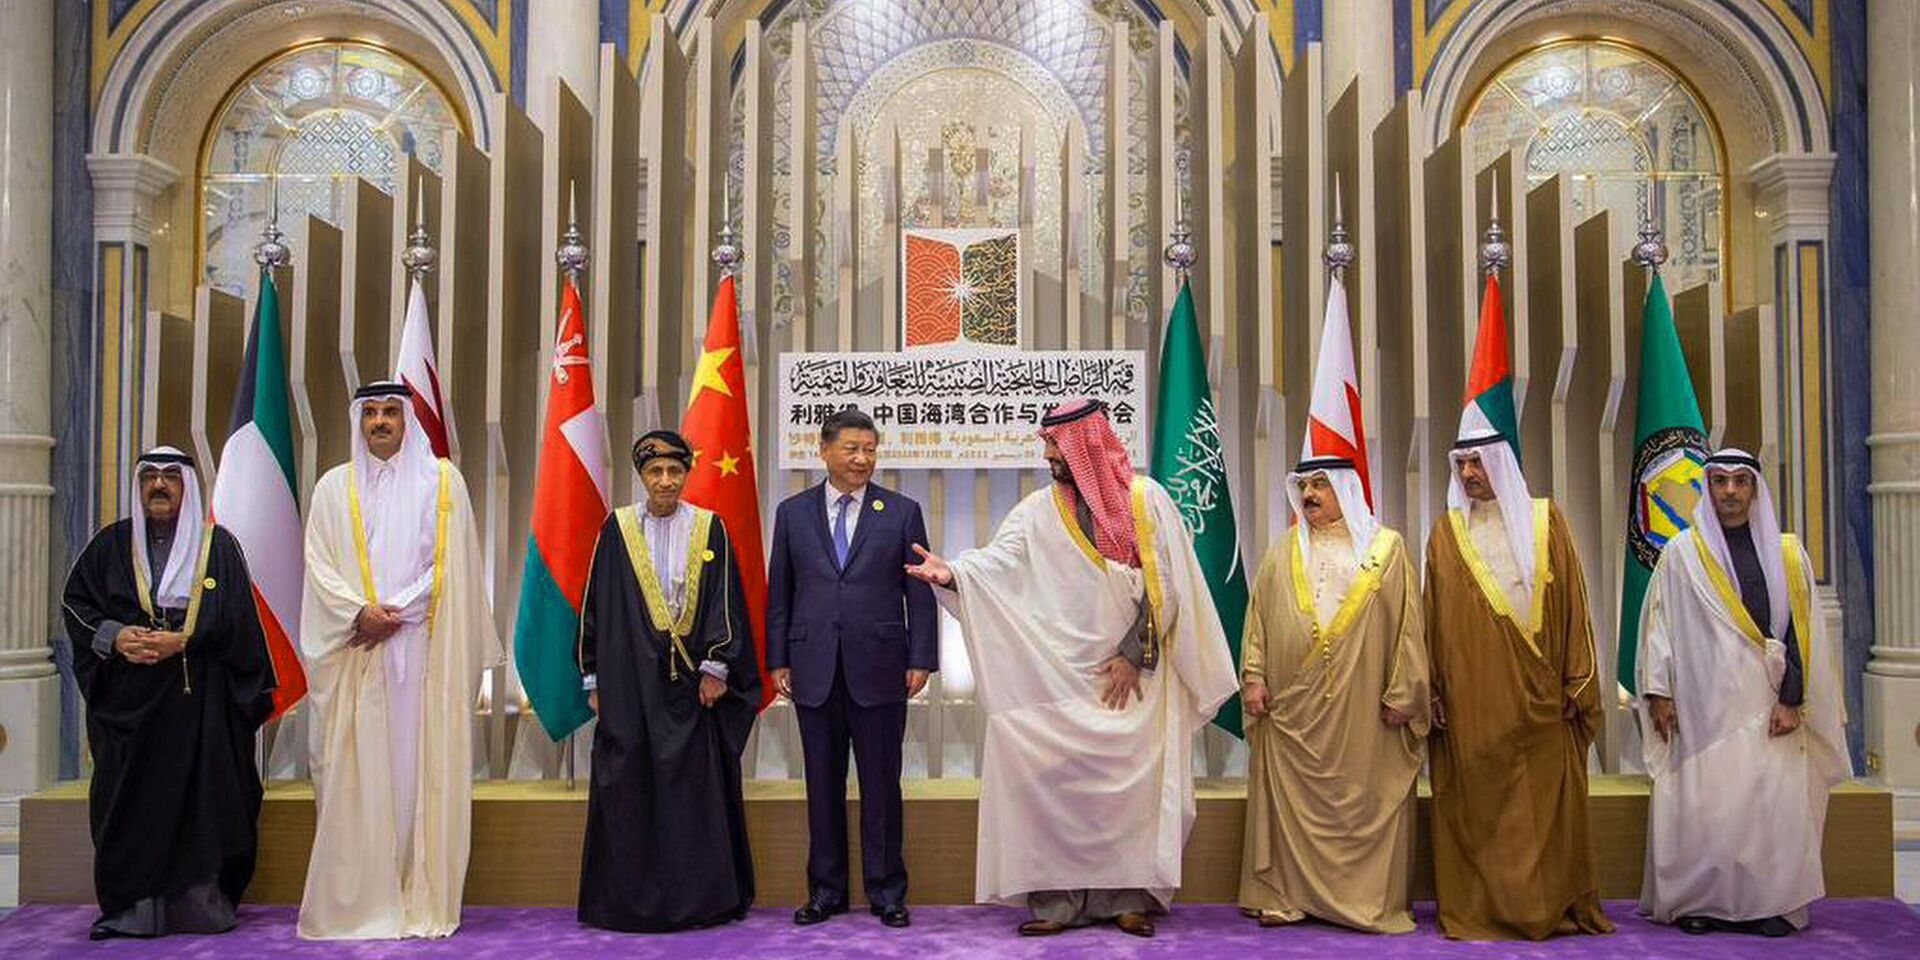 Председатель КНР Си Цзиньпин и наследный принц Саудовской Аравии Мухаммед бен Салман во время встречи в Эр-Рияде. 9 декабря 2022 года - ИноСМИ, 1920, 15.12.2022